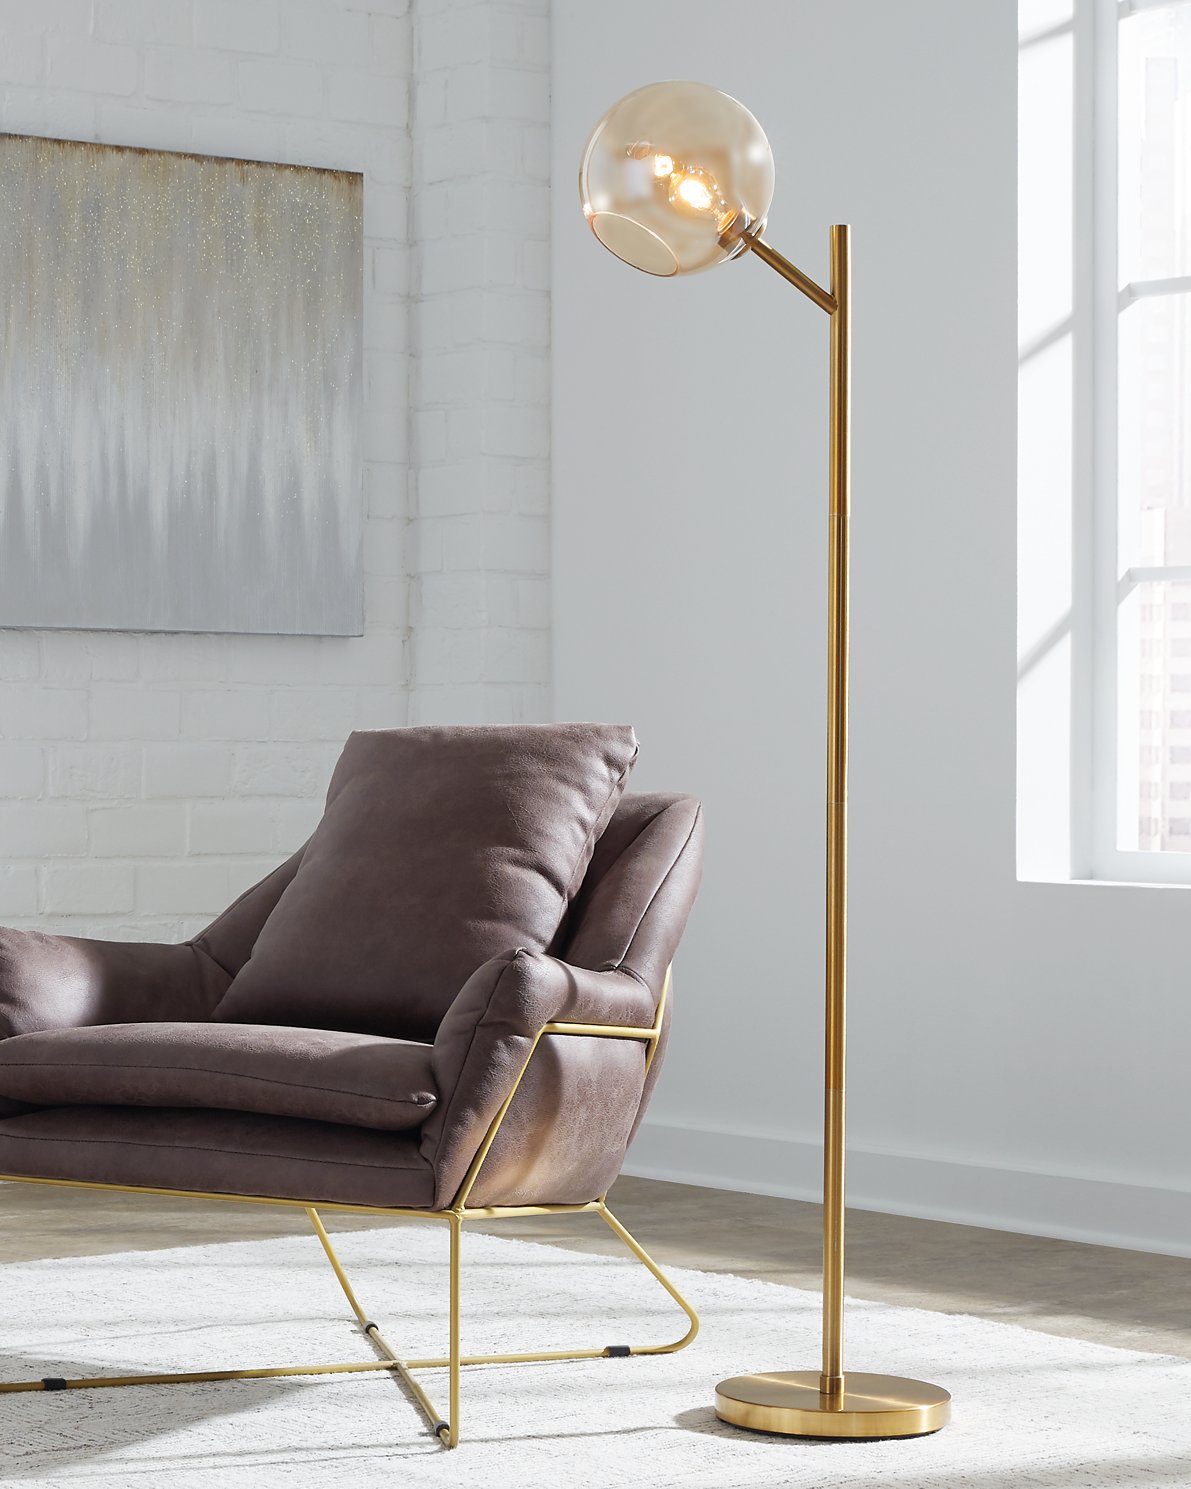 Abanson Floor Lamp - Half Price Furniture